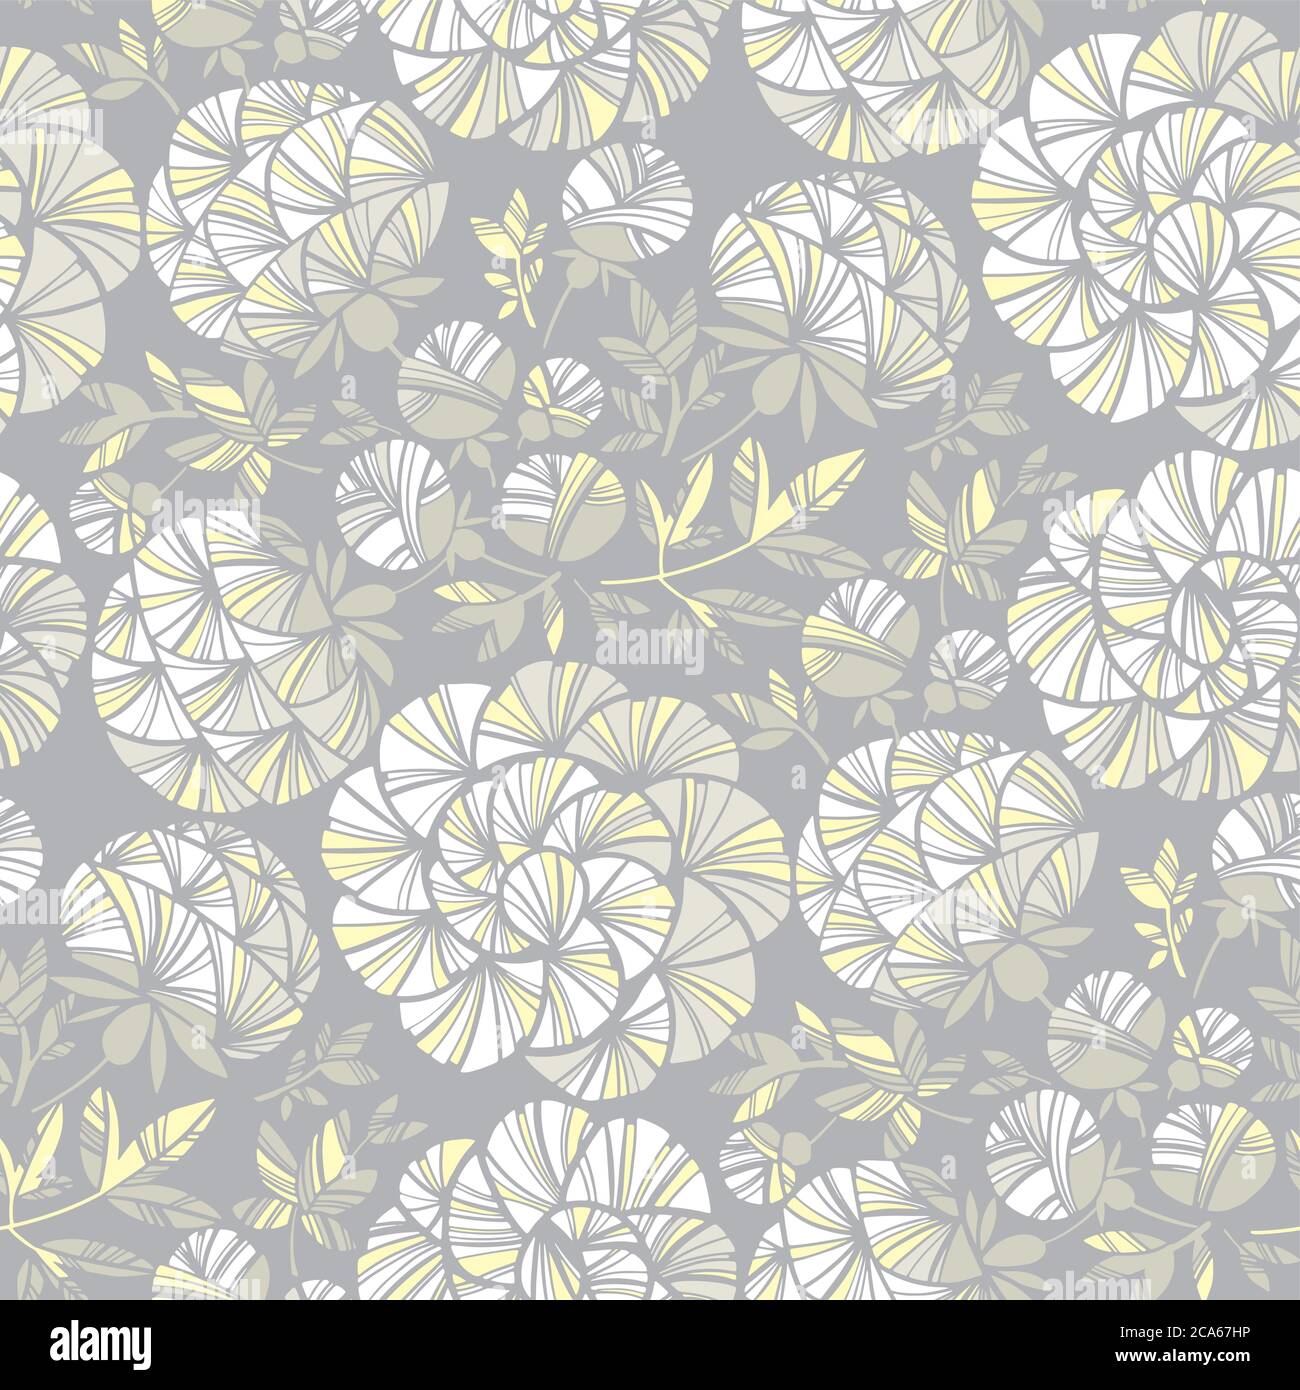 Luxus graue Pfingstrose Blume nahtlose Muster für Hintergrund, Stoff, Textil, Wrap, Oberfläche, Web-und Print-Design. Stock Vektor